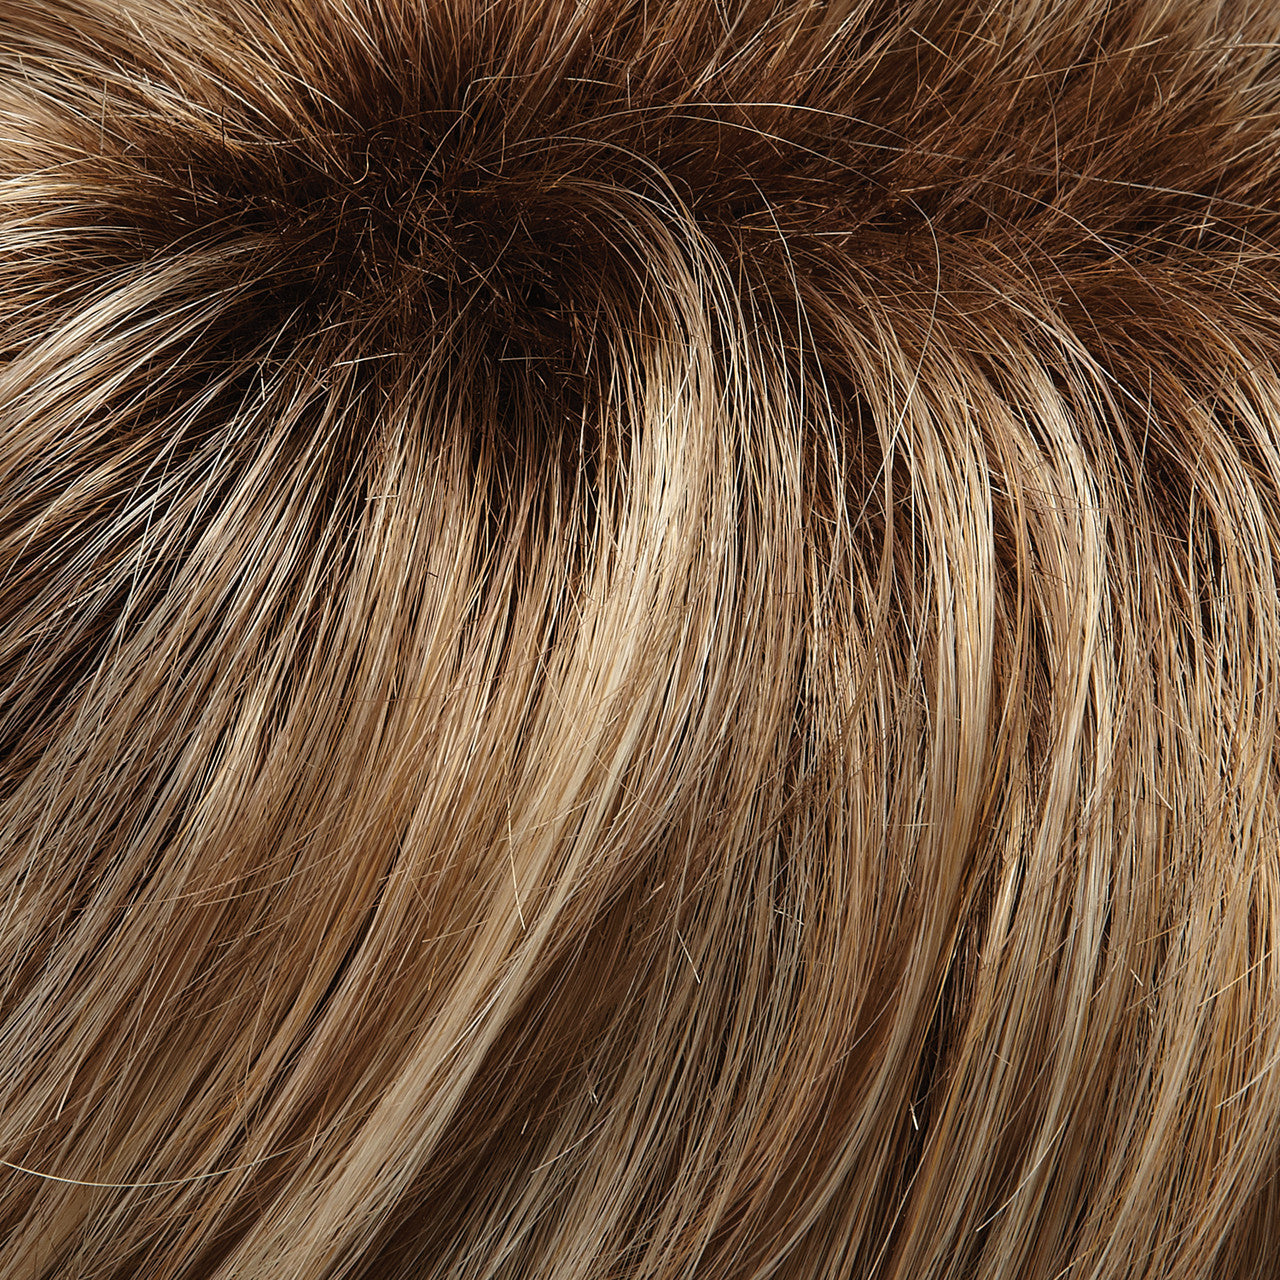 5155 Amber a Lace Front Mono Crown Large Cap Wig by Jon Renau